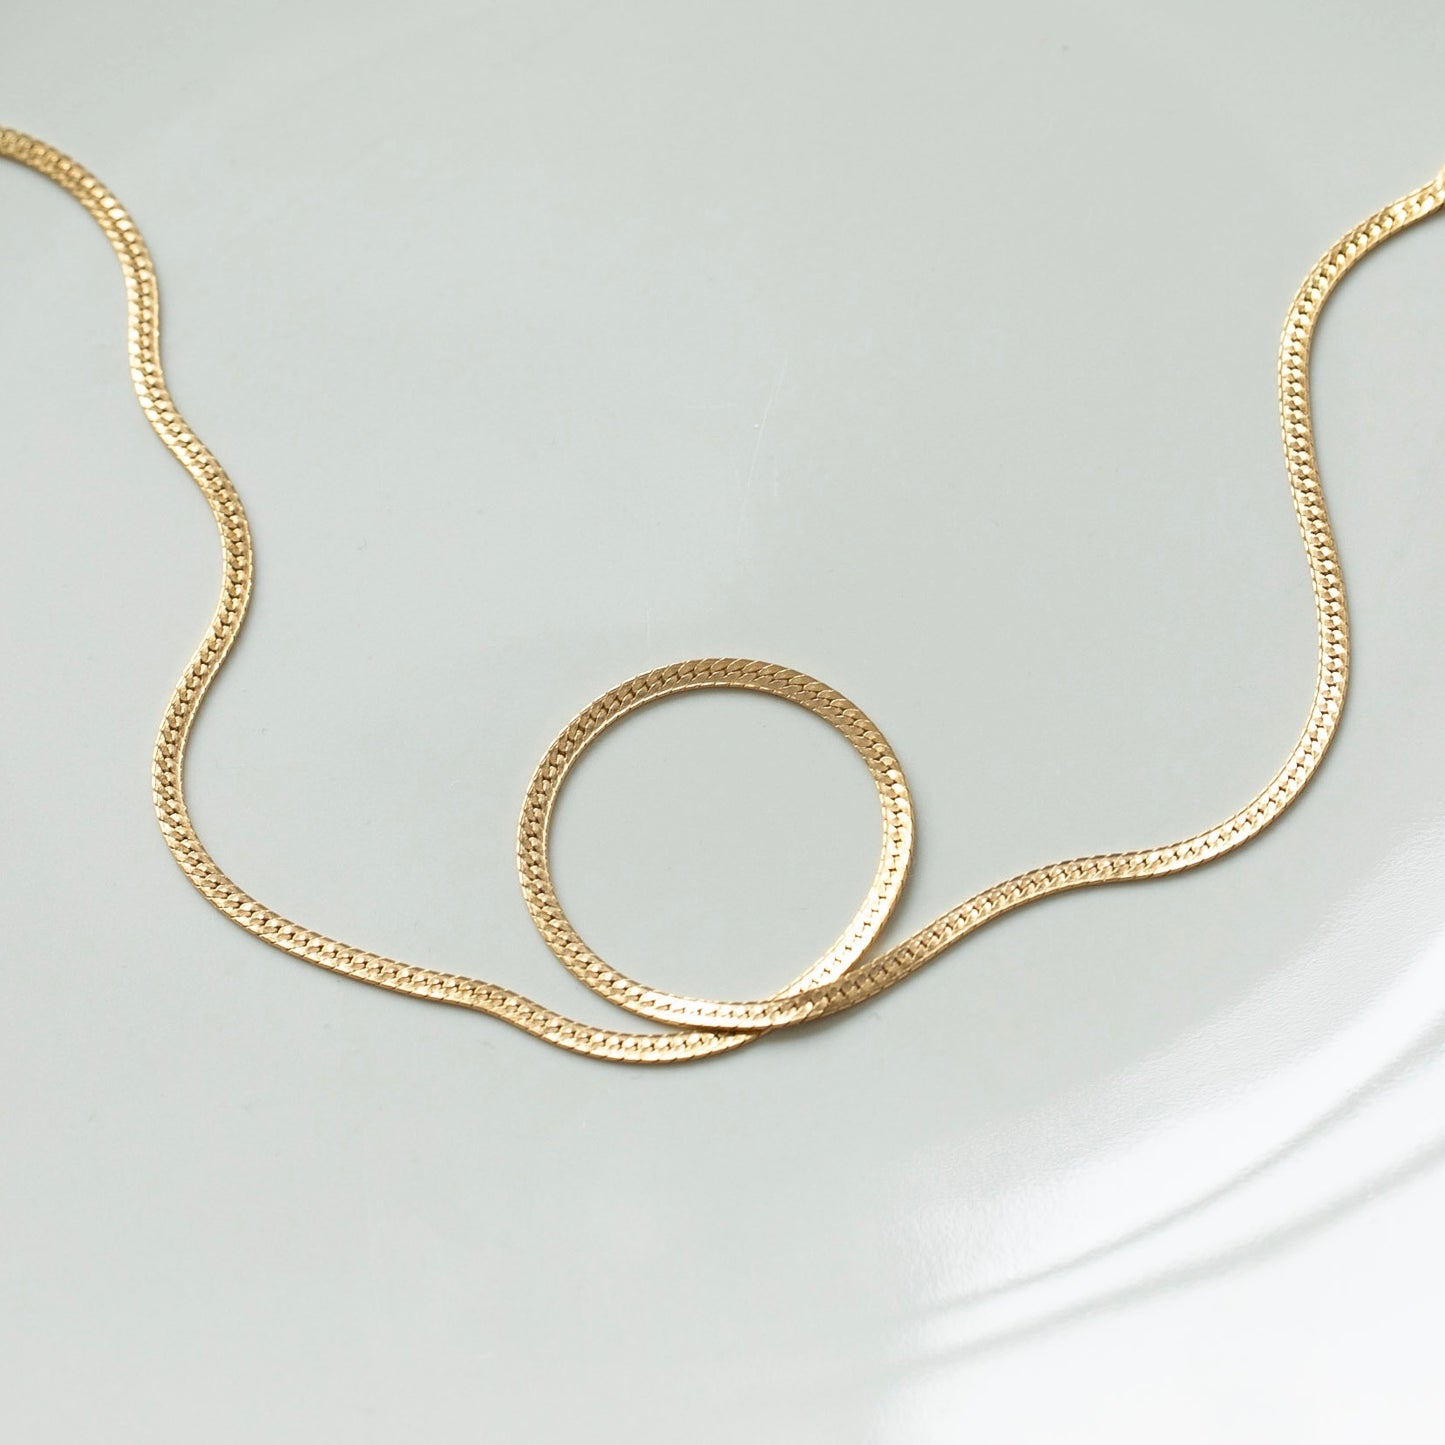 The Herringbone Necklace